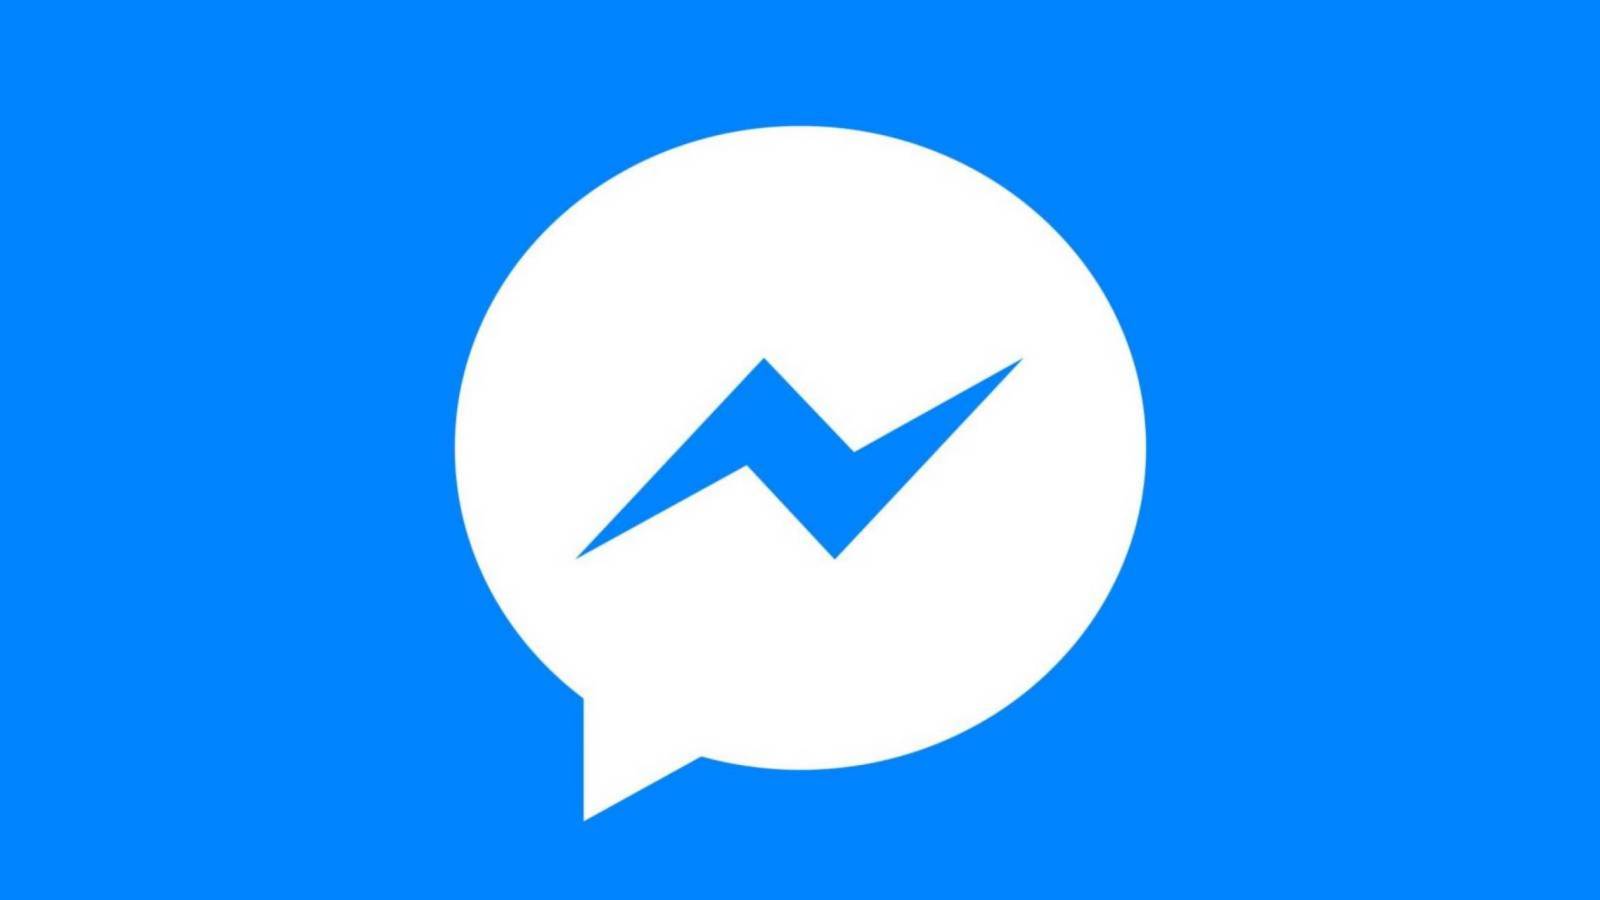 Nowa aktualizacja Facebook Messenger dostępna dla użytkowników